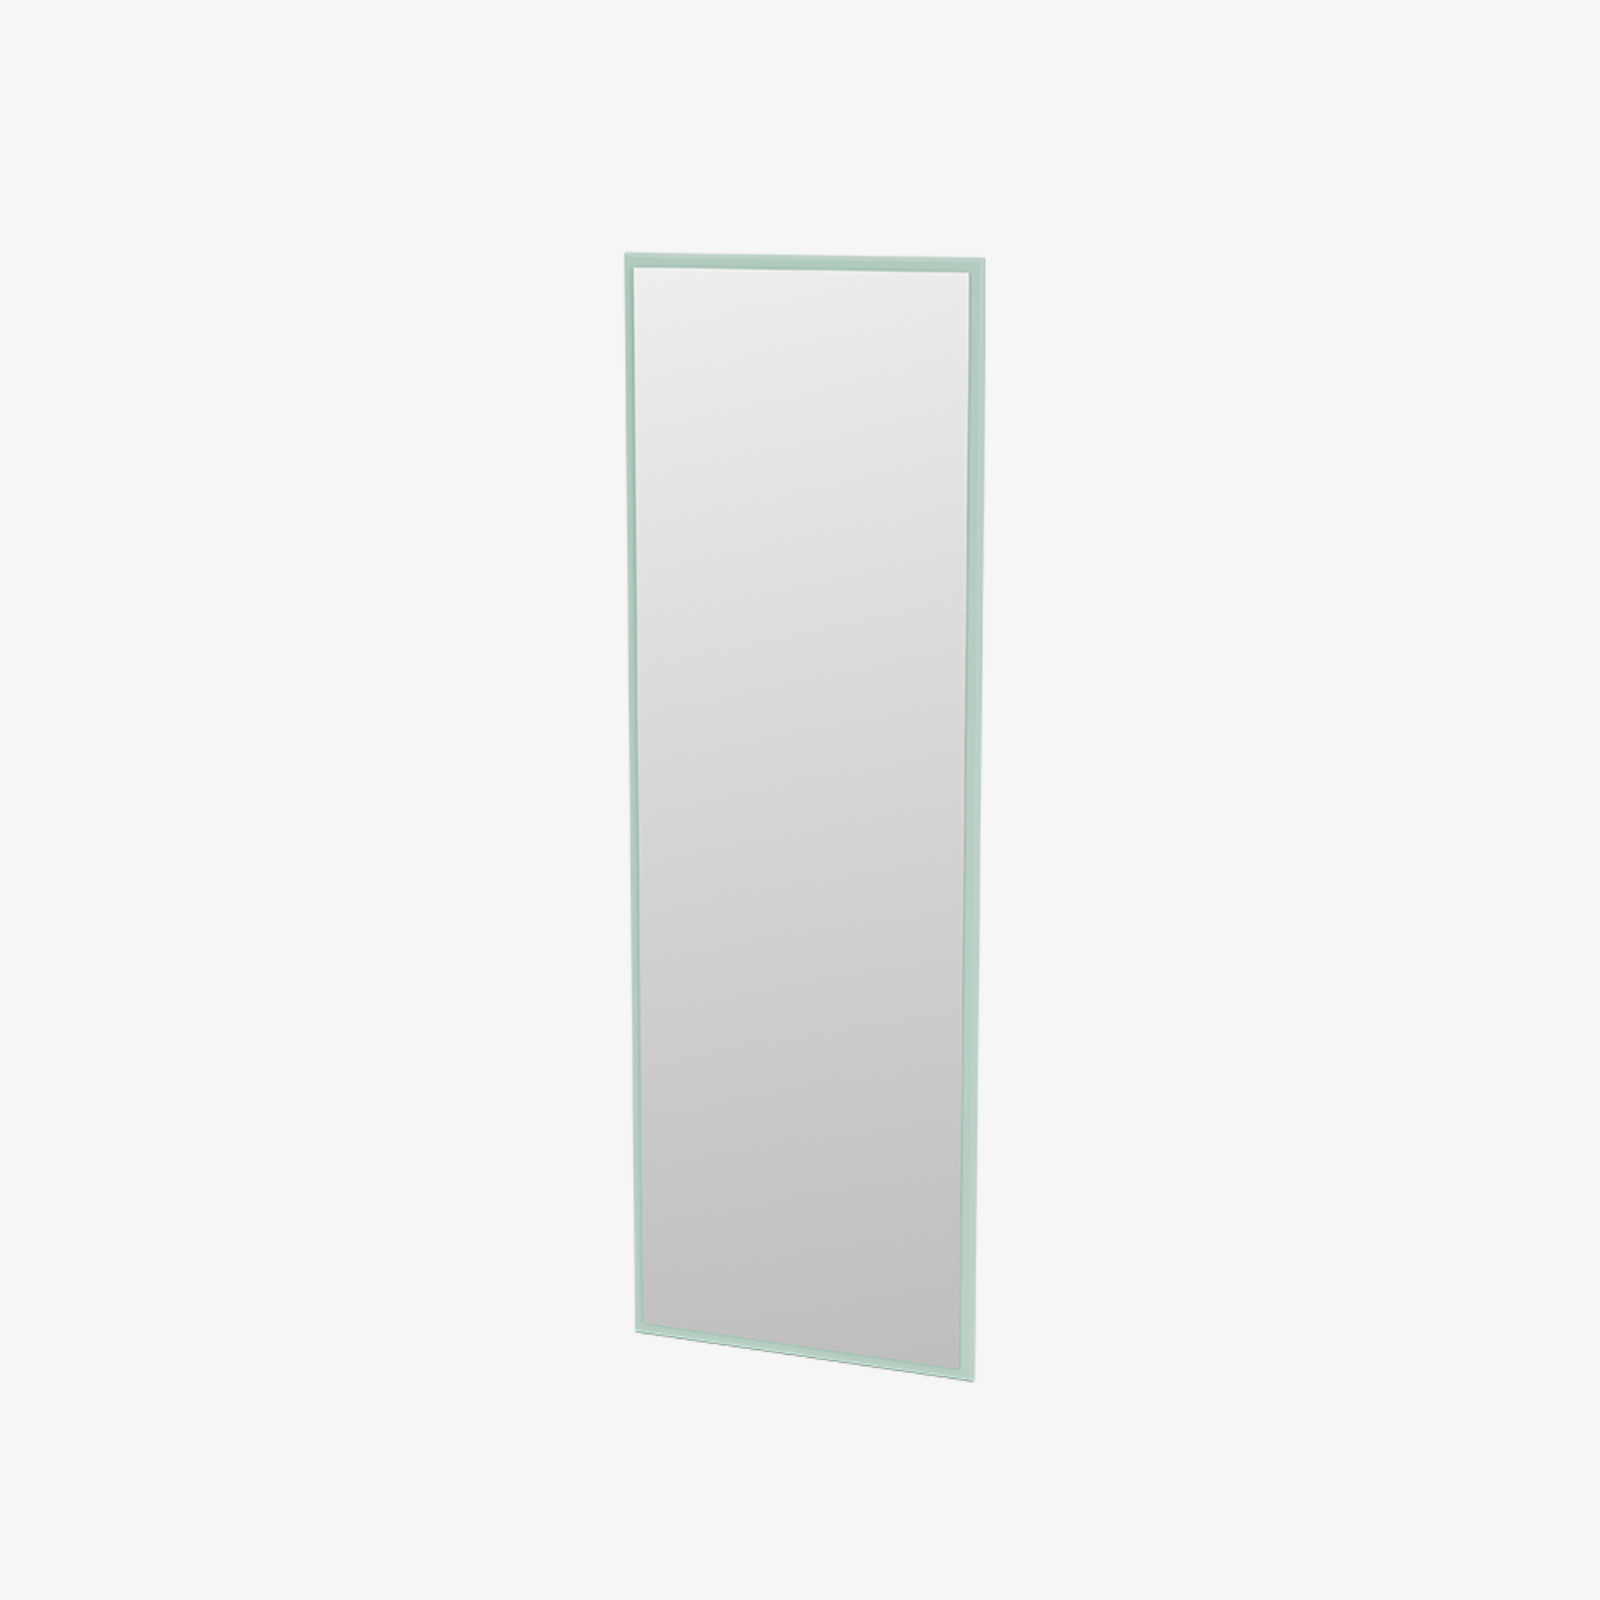 챕터원,몬타나 셀렉션 LIKE 거울 (41 COLORS)